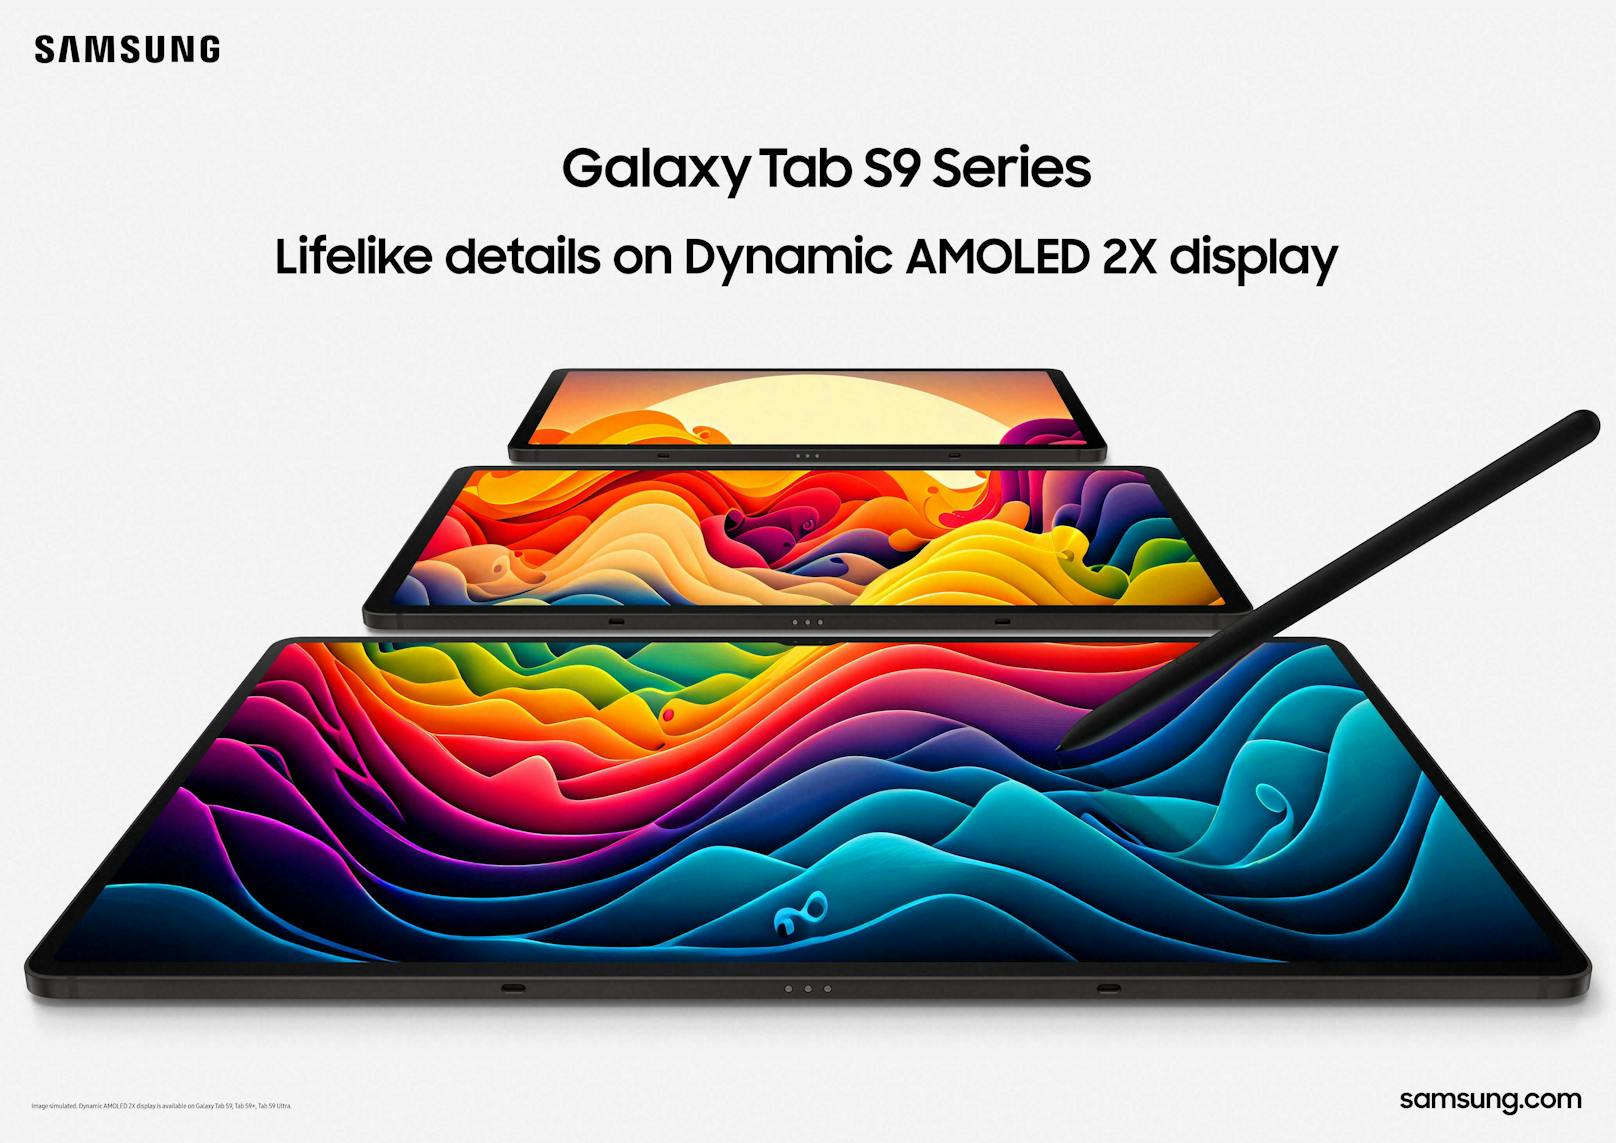 Die Samsung Galaxy Tab S9 Serie soll Laptops in Sachen Leistung, Funktionalität und Gaming ersetzen können.